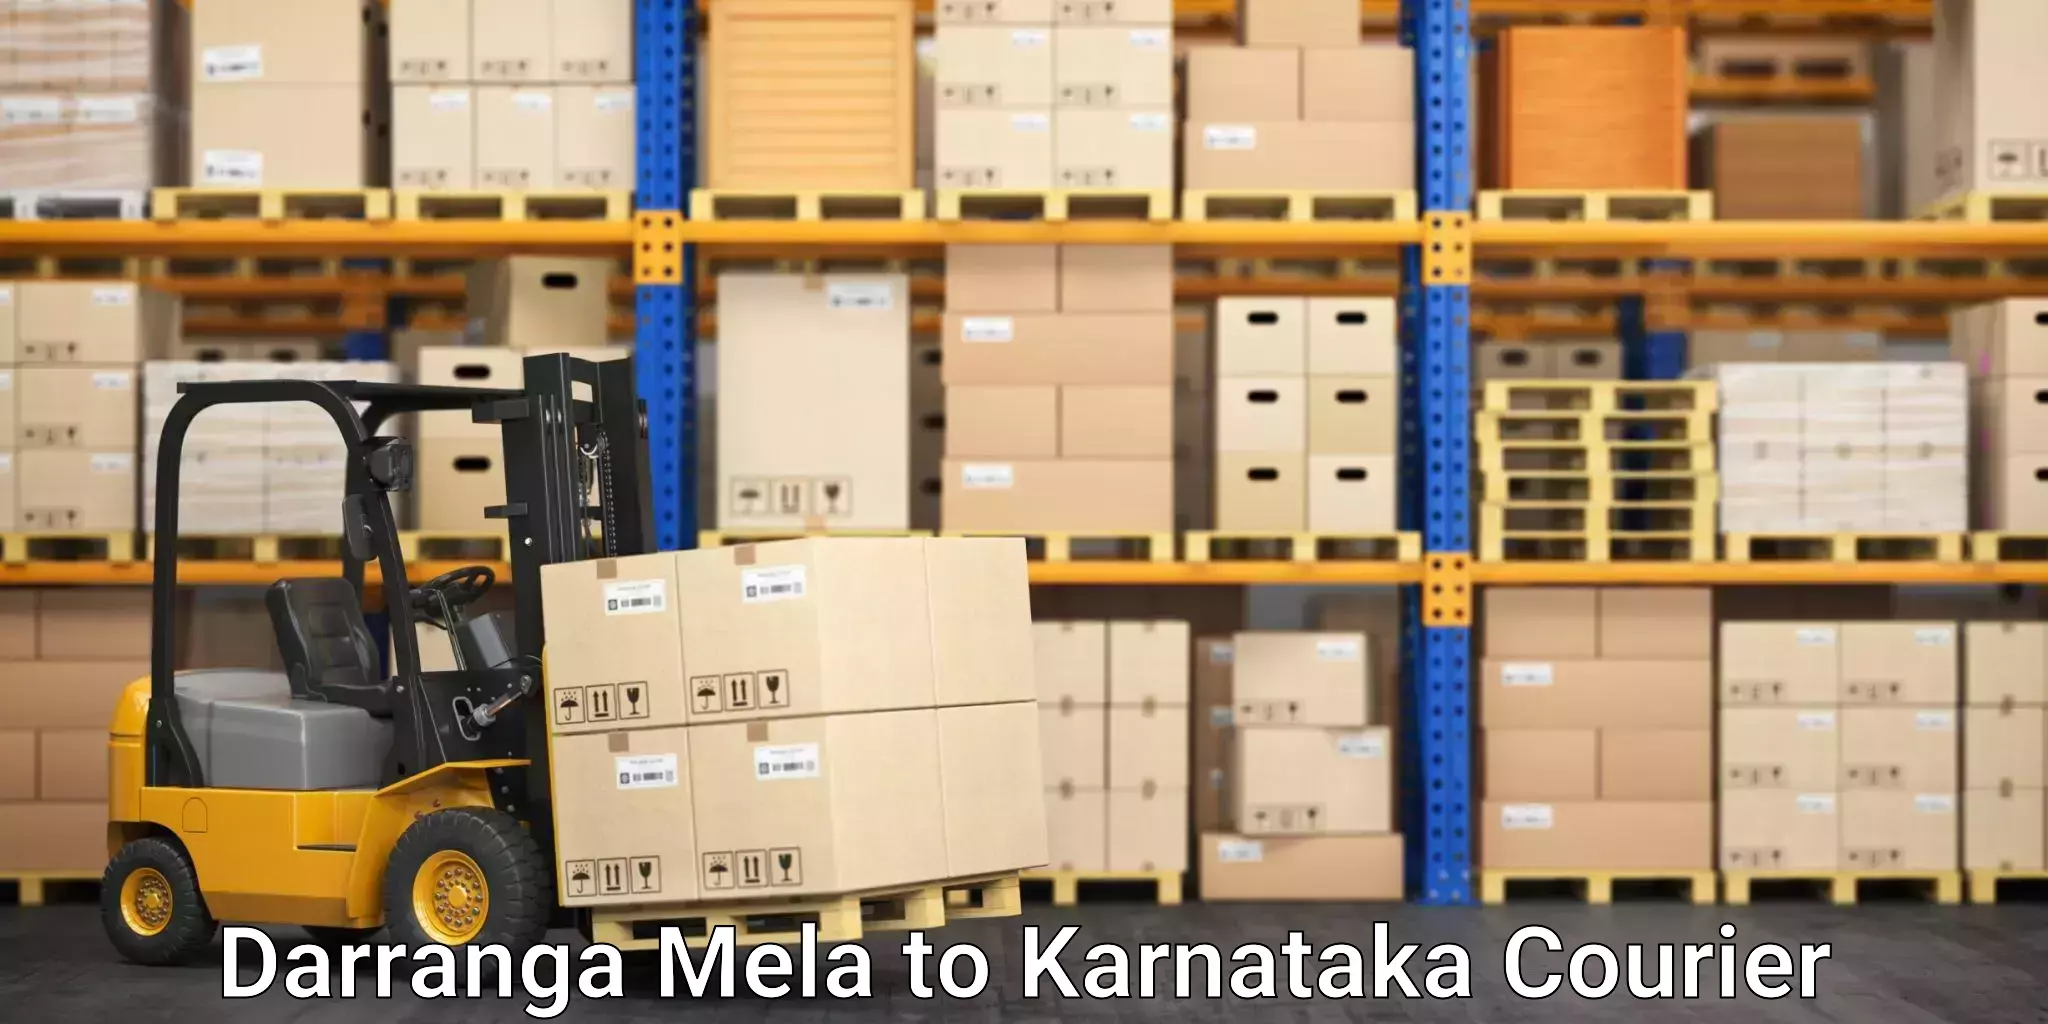 Express package handling Darranga Mela to Koppal